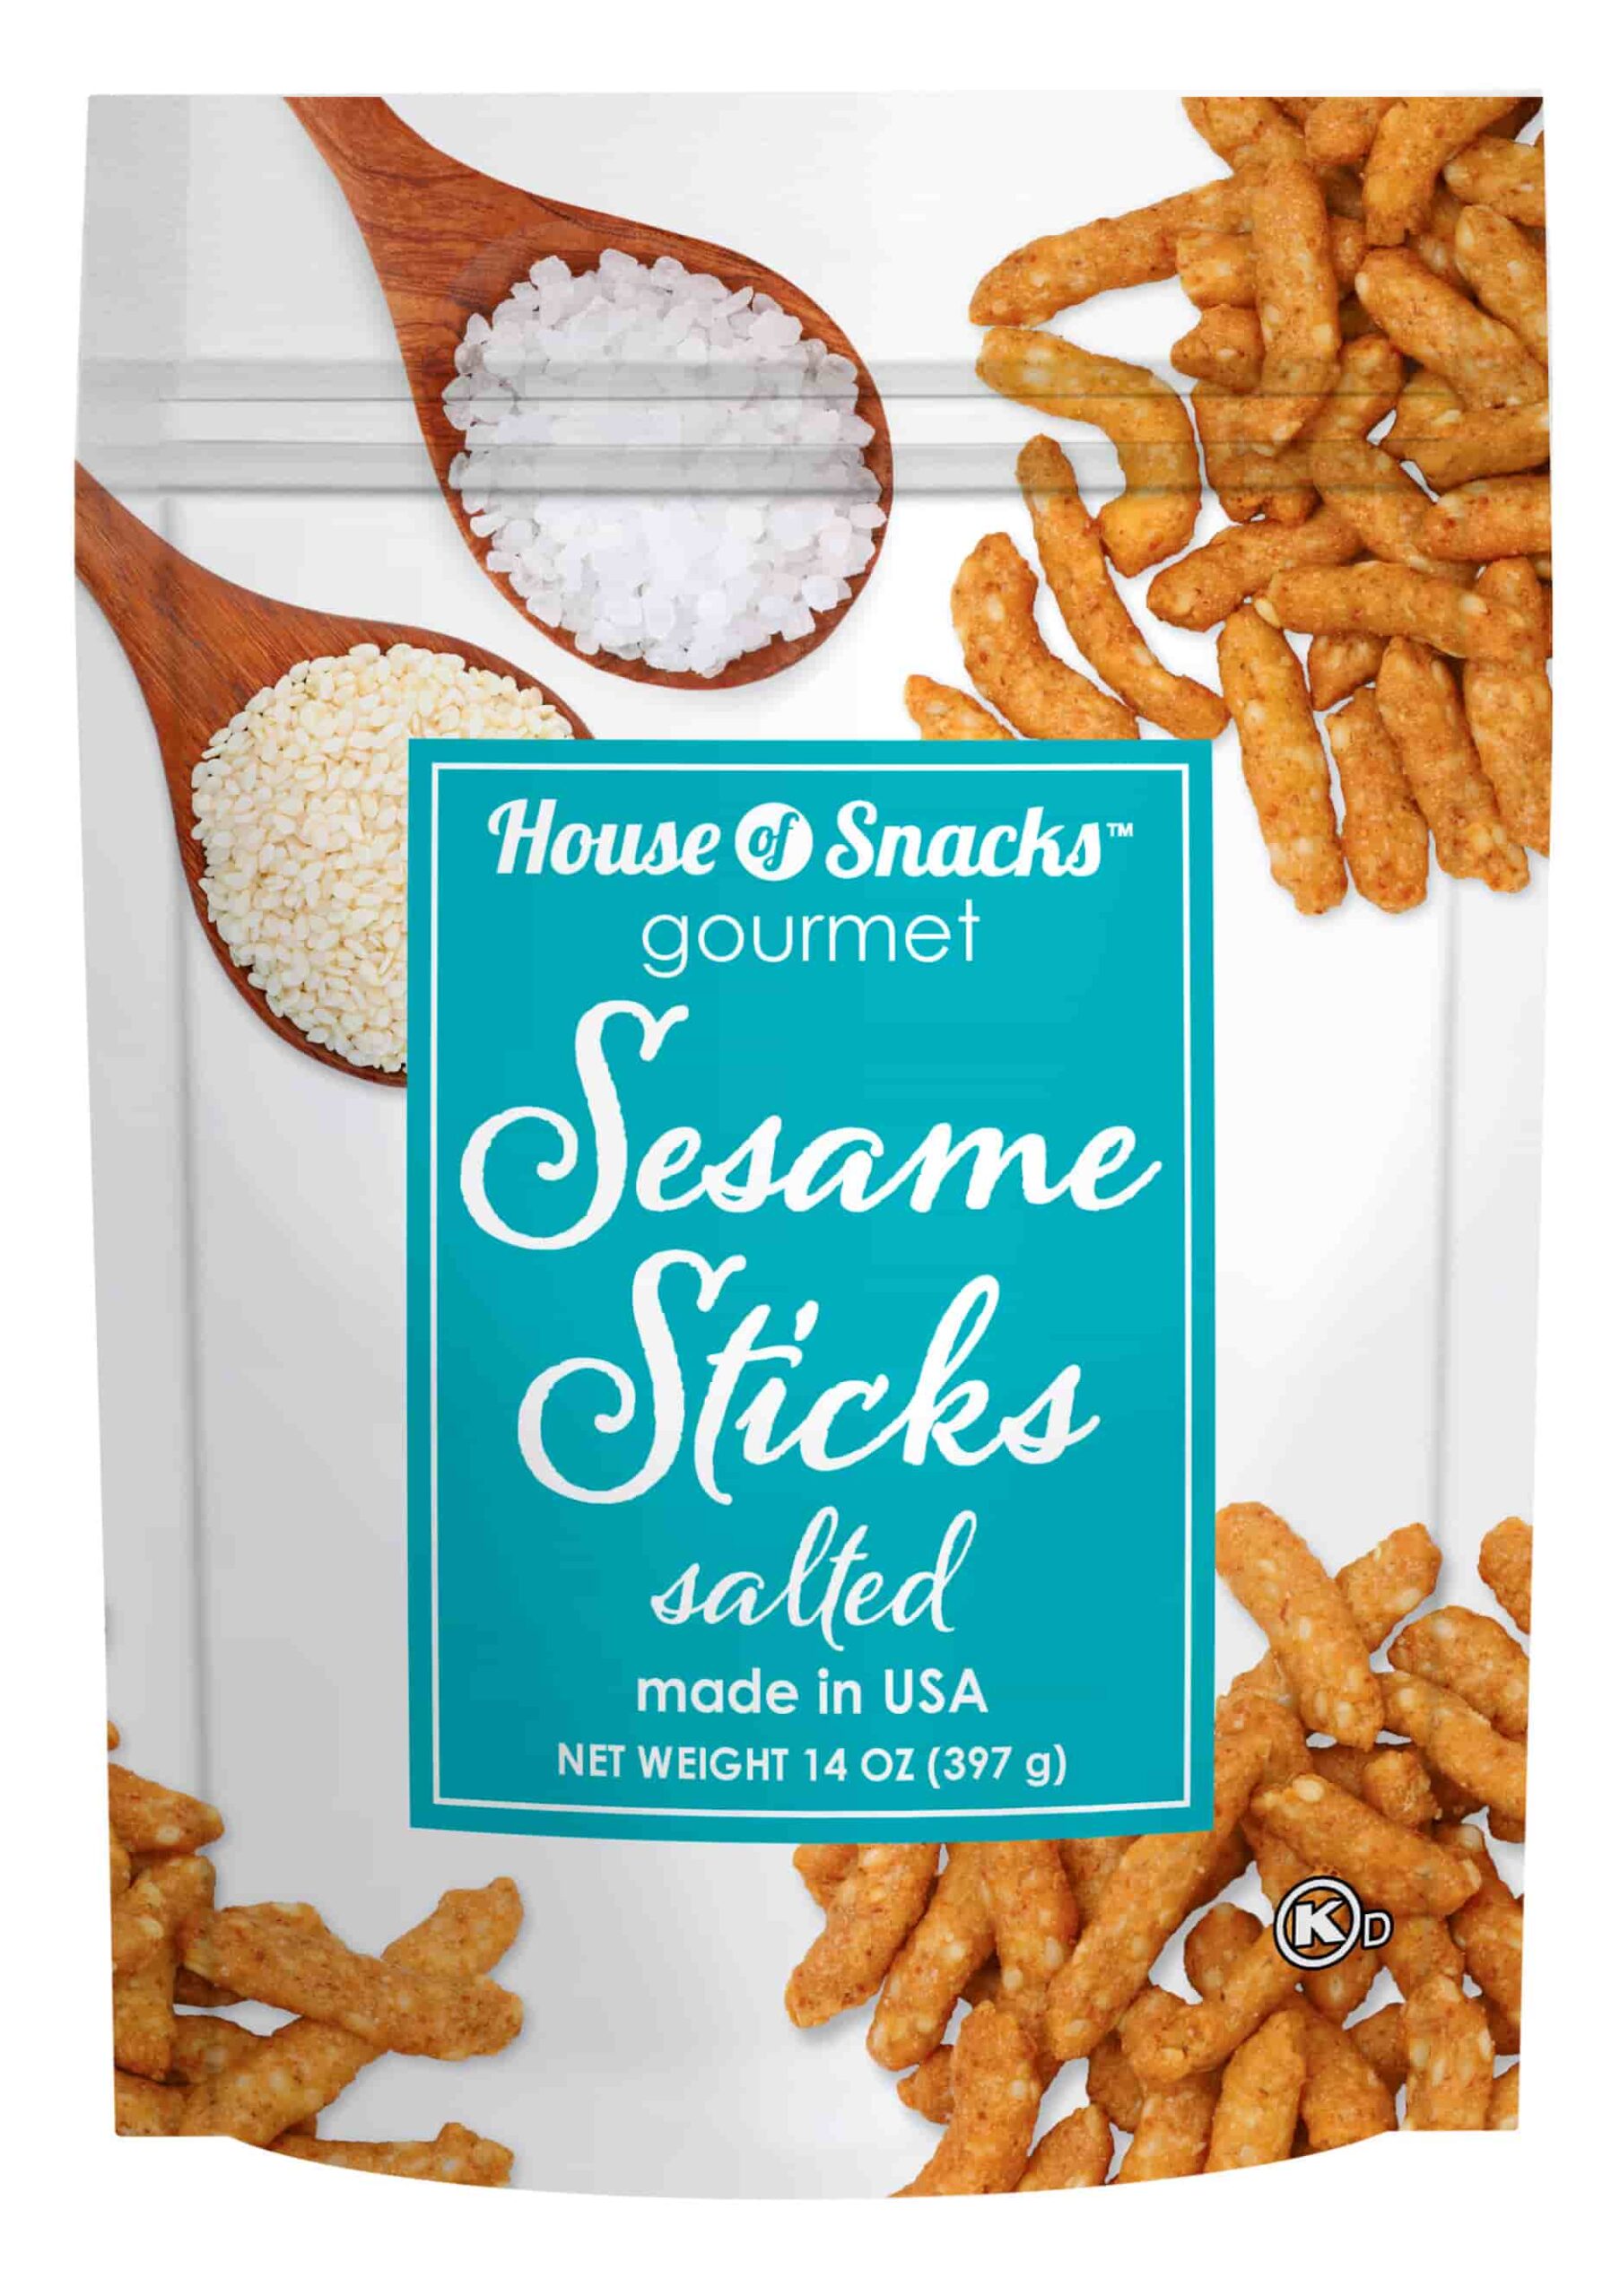 Sesame Sticks Salted